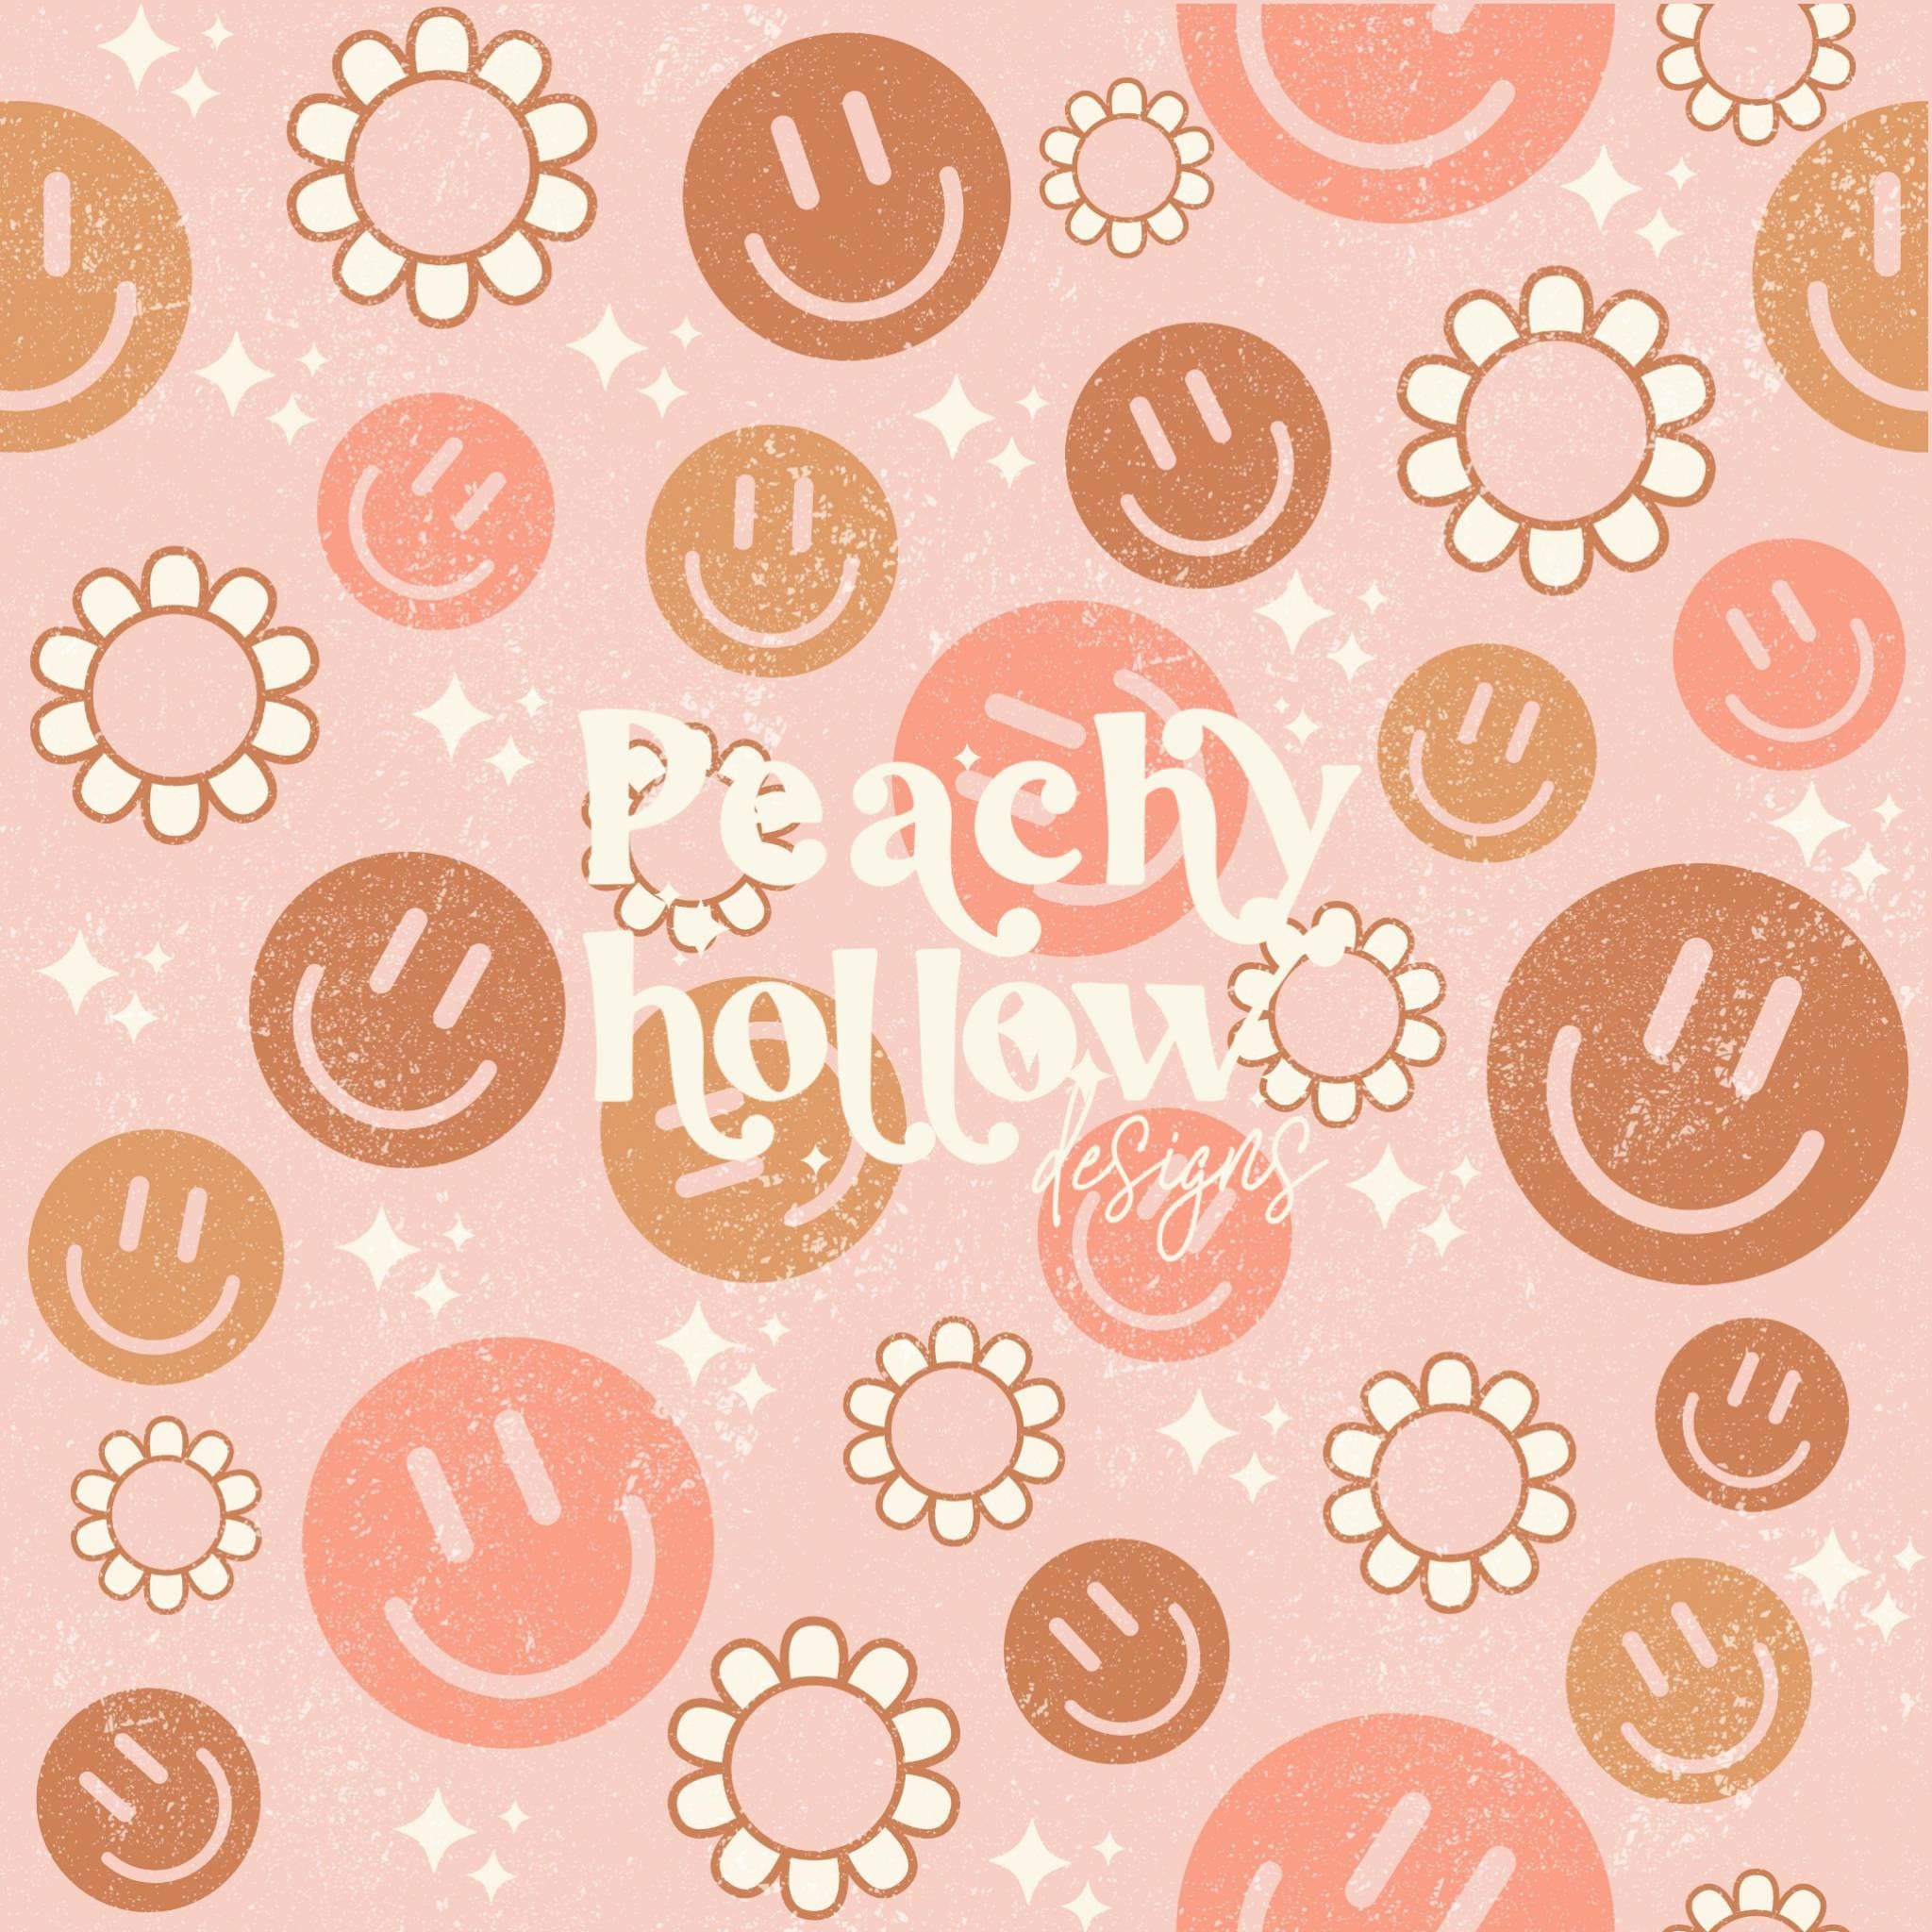 Smiley Face Flower Wallpaper